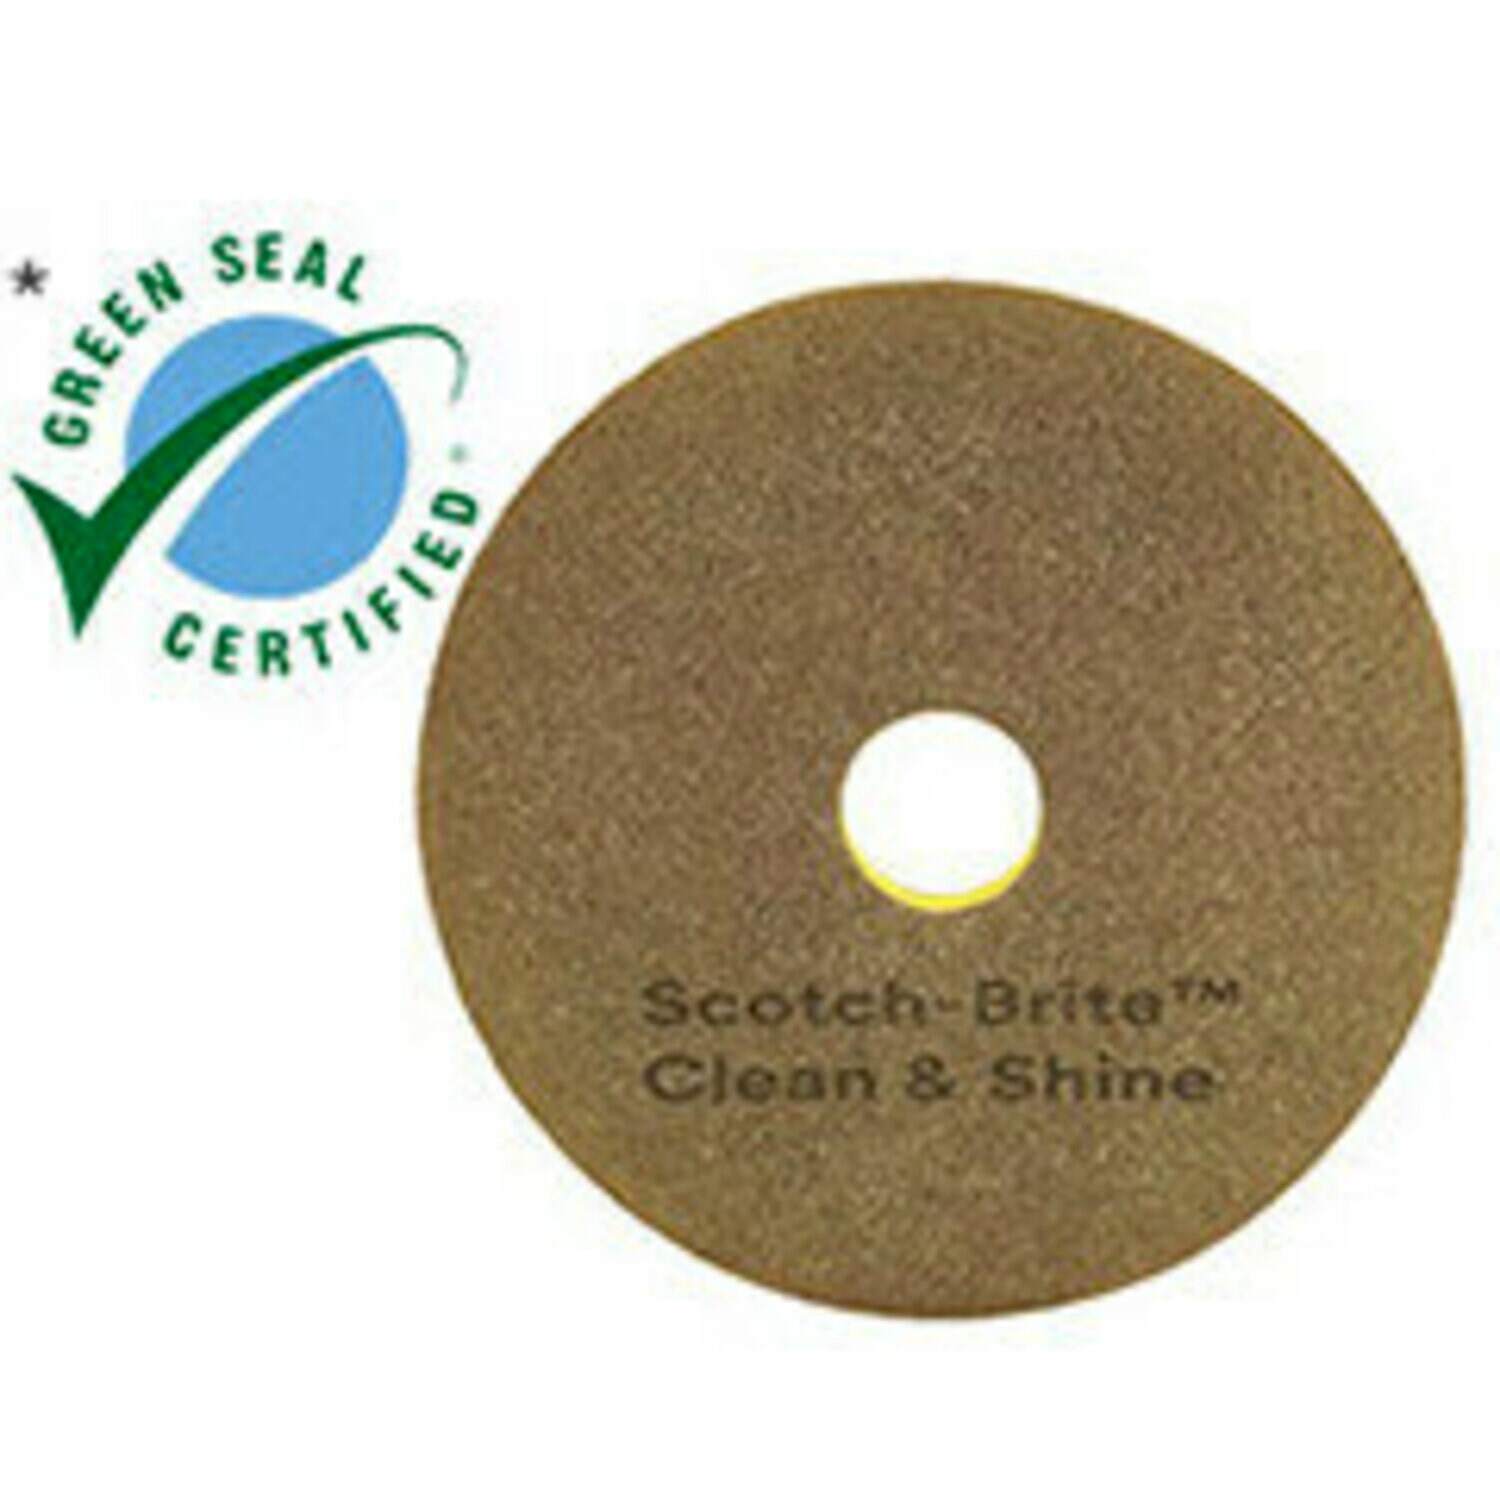 7100148036 - Scotch-Brite Clean & Shine Pad, 11 in, 5/Case